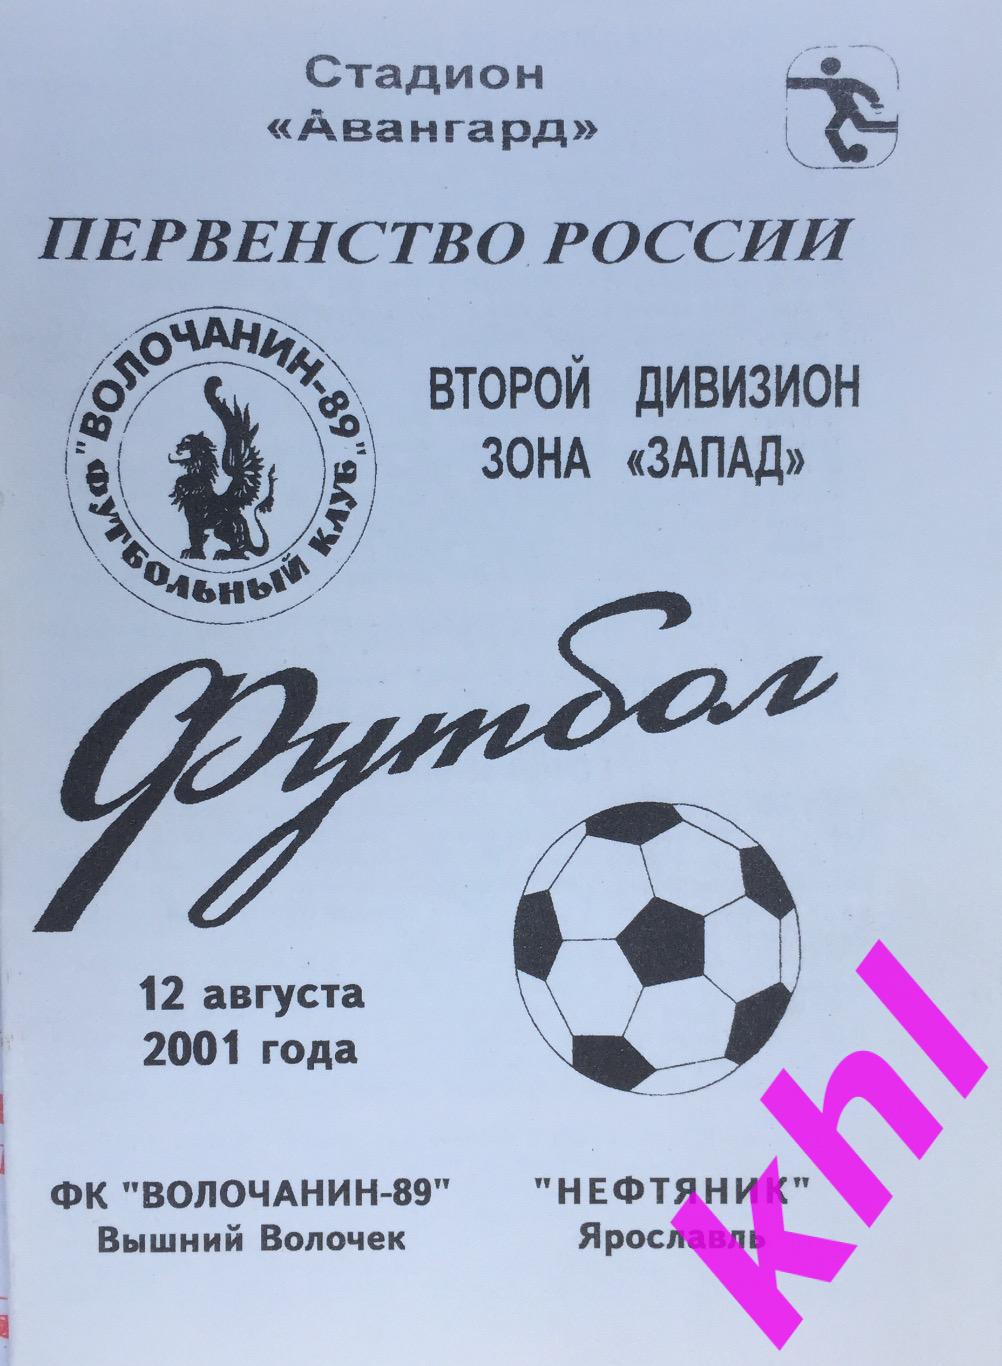 Волочанин-89 Вышний Волочек - Нефтяник Ярославль 12 августа 2001